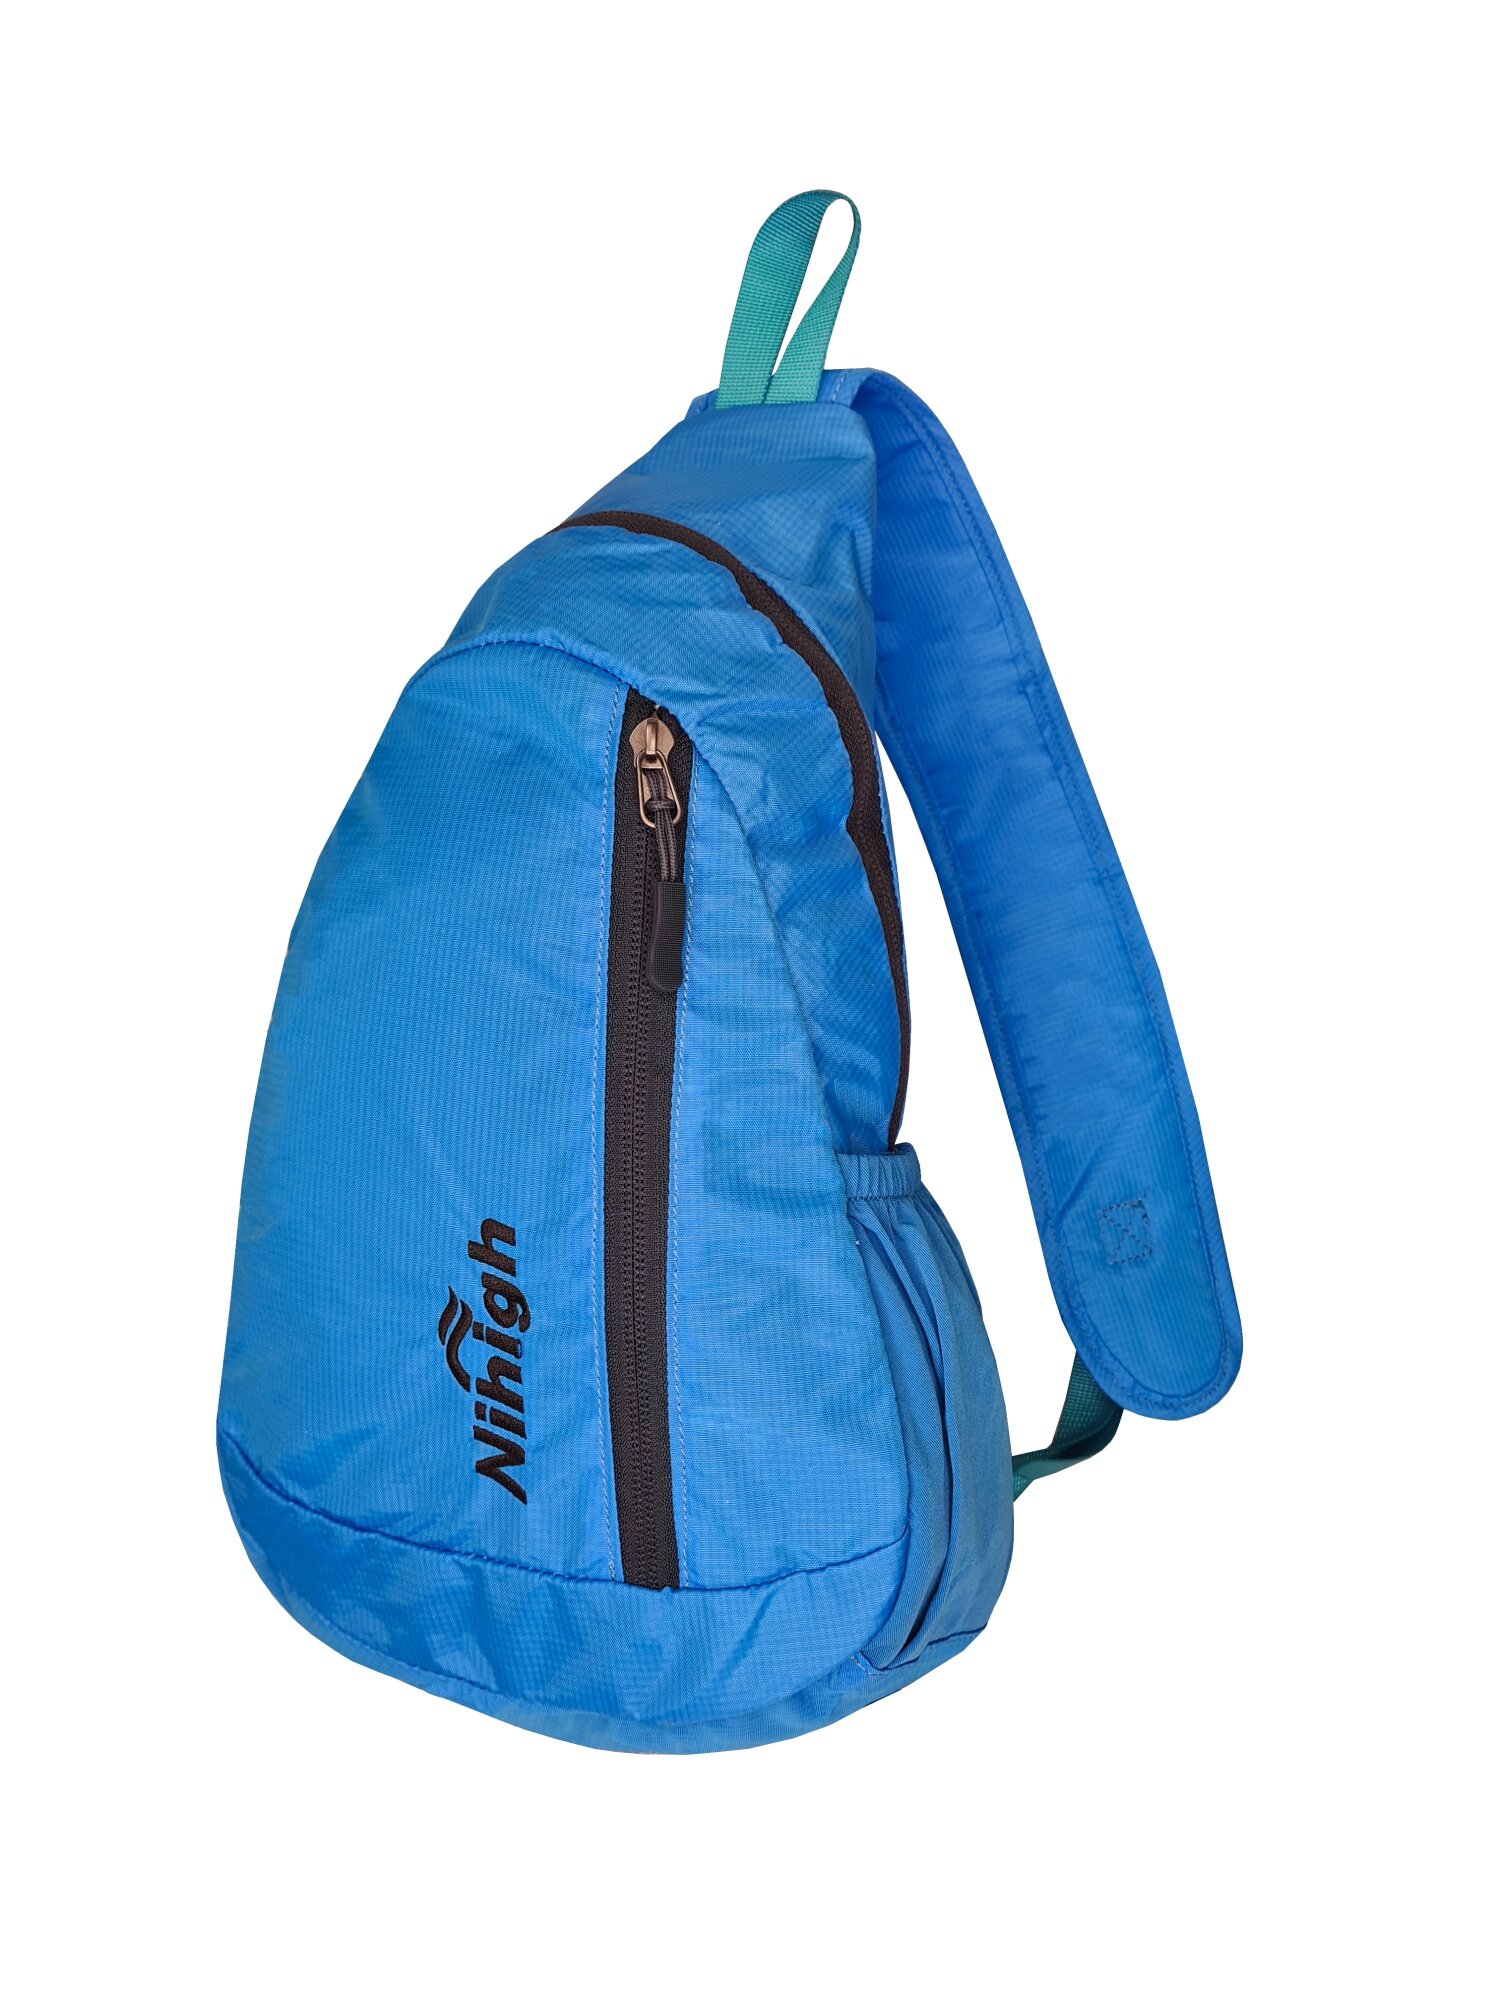 Рюкзак детский однолямочный NiHigh 8л Sky Blue